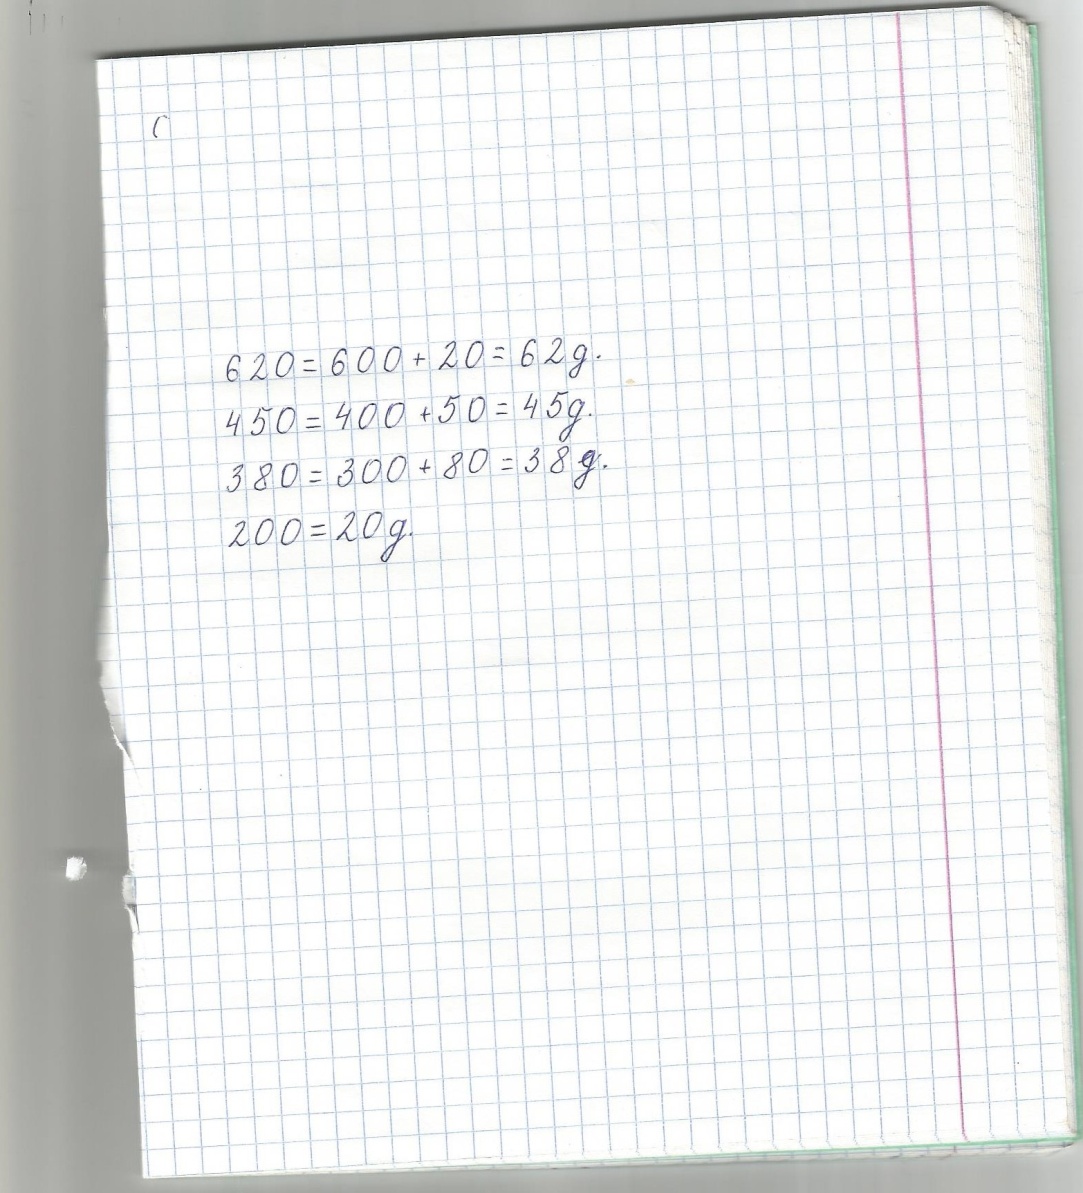 Конспект урока математики в 3 классе по программе Школа России на темуУстные приёмы сложения и вычитания чисел в пределах 1000